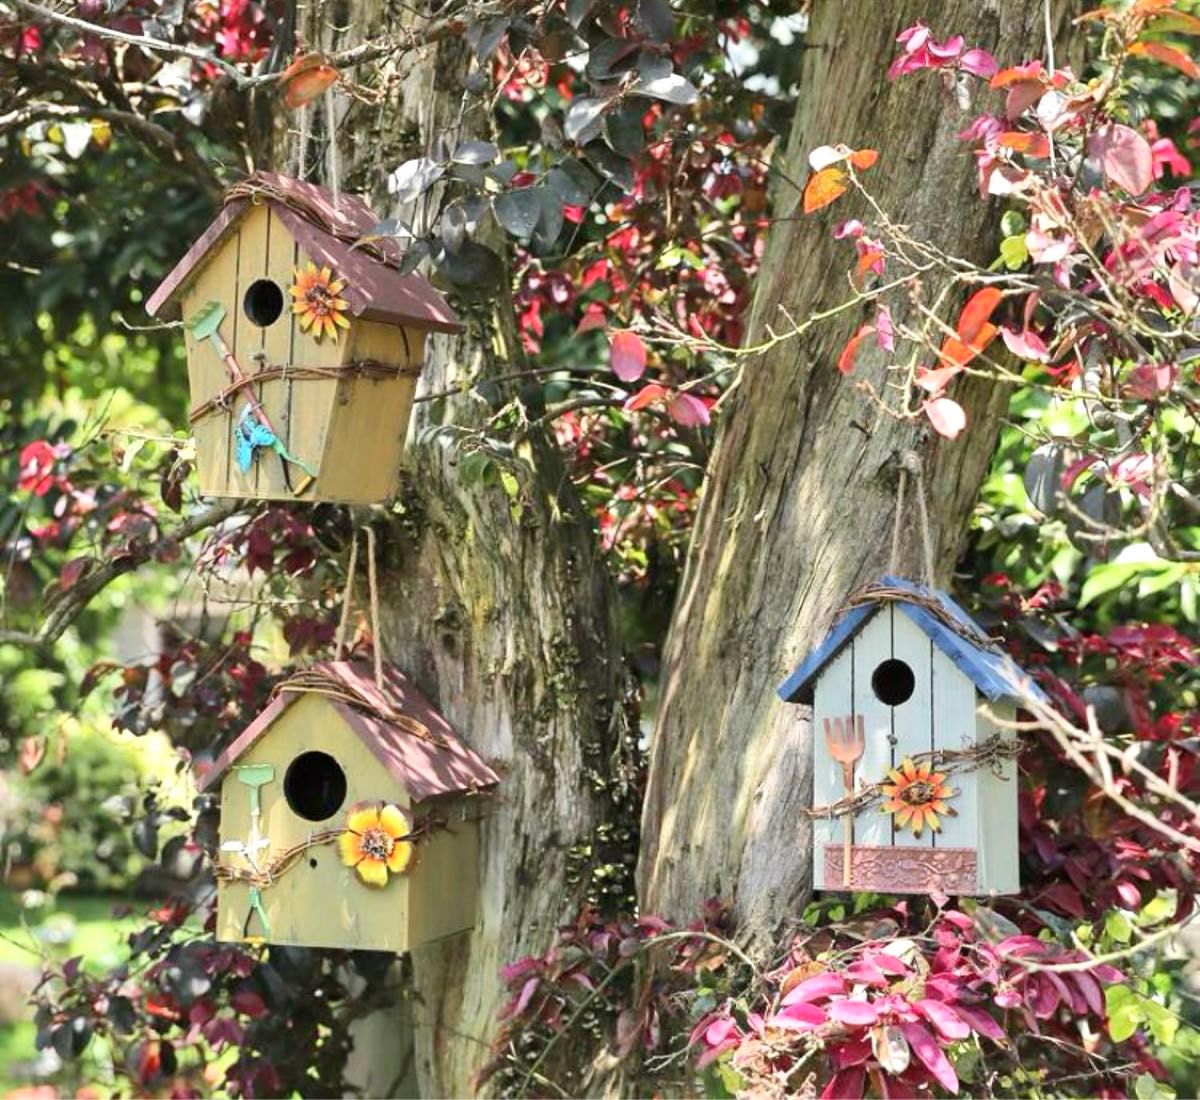 鳥の巣 巣箱バードハウス木製天然木 インテリア雑貨オブジェガーデニング置物お家シリーズ 鳥小屋 鳥ケージ ハンギング天然木材 餌台